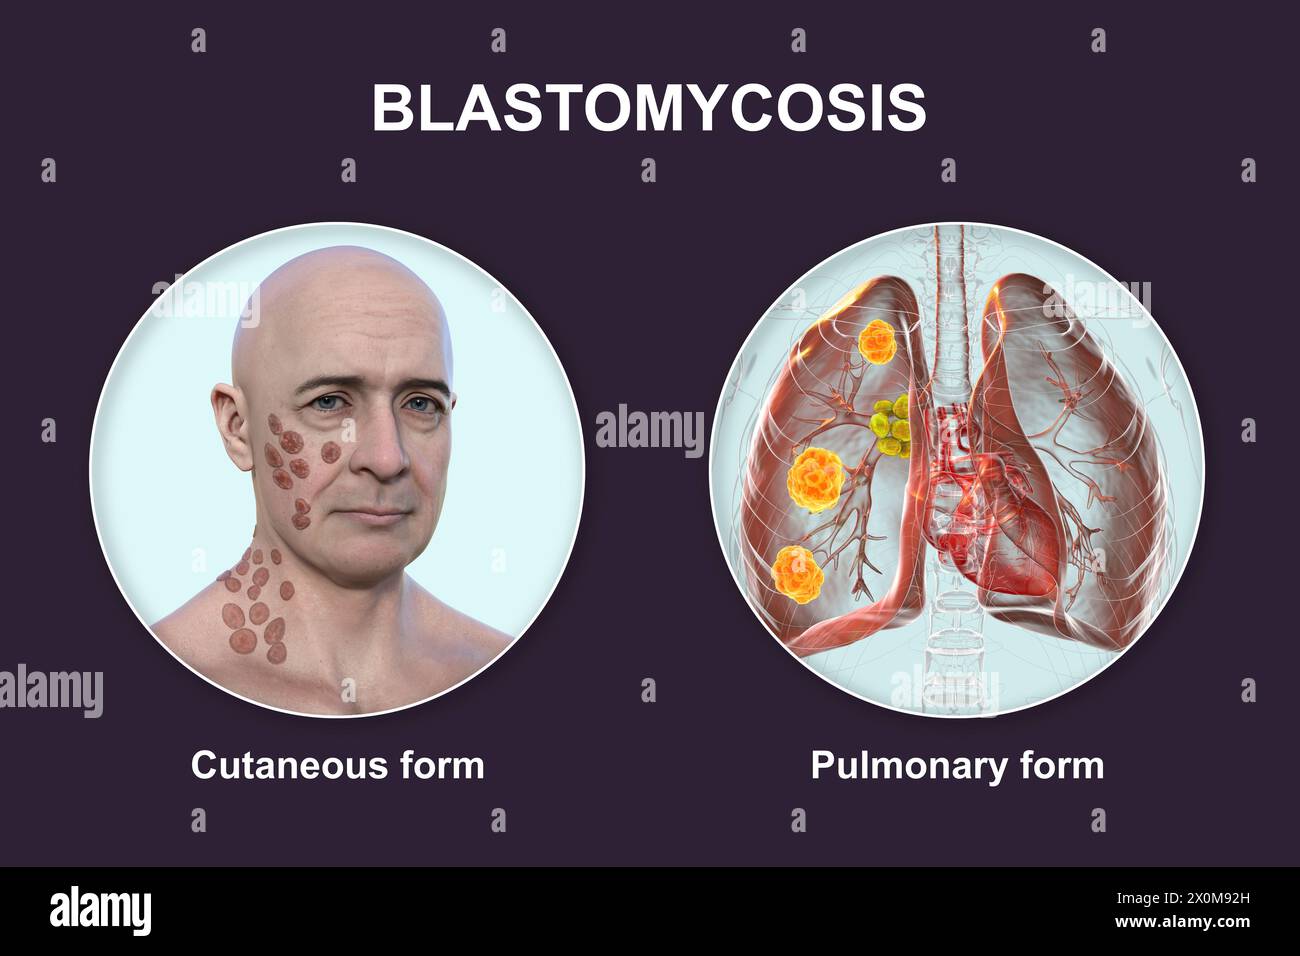 3D-Illustration, die zwei klinische Darstellungen der Blastomykose zeigt: Kutan (die Haut betrifft) und pulmonal (die Lunge betrifft). Blastomykose ist eine Pilzinfektion, die nach Inhalation von Blastomyces dermatitidis-Sporen auftreten kann. Es ist oft asymptomatisch, aber wenn Symptome entwickeln, betreffen sie vor allem die Lunge, wobei einige Patienten auch Hautläsionen entwickeln. Stockfoto